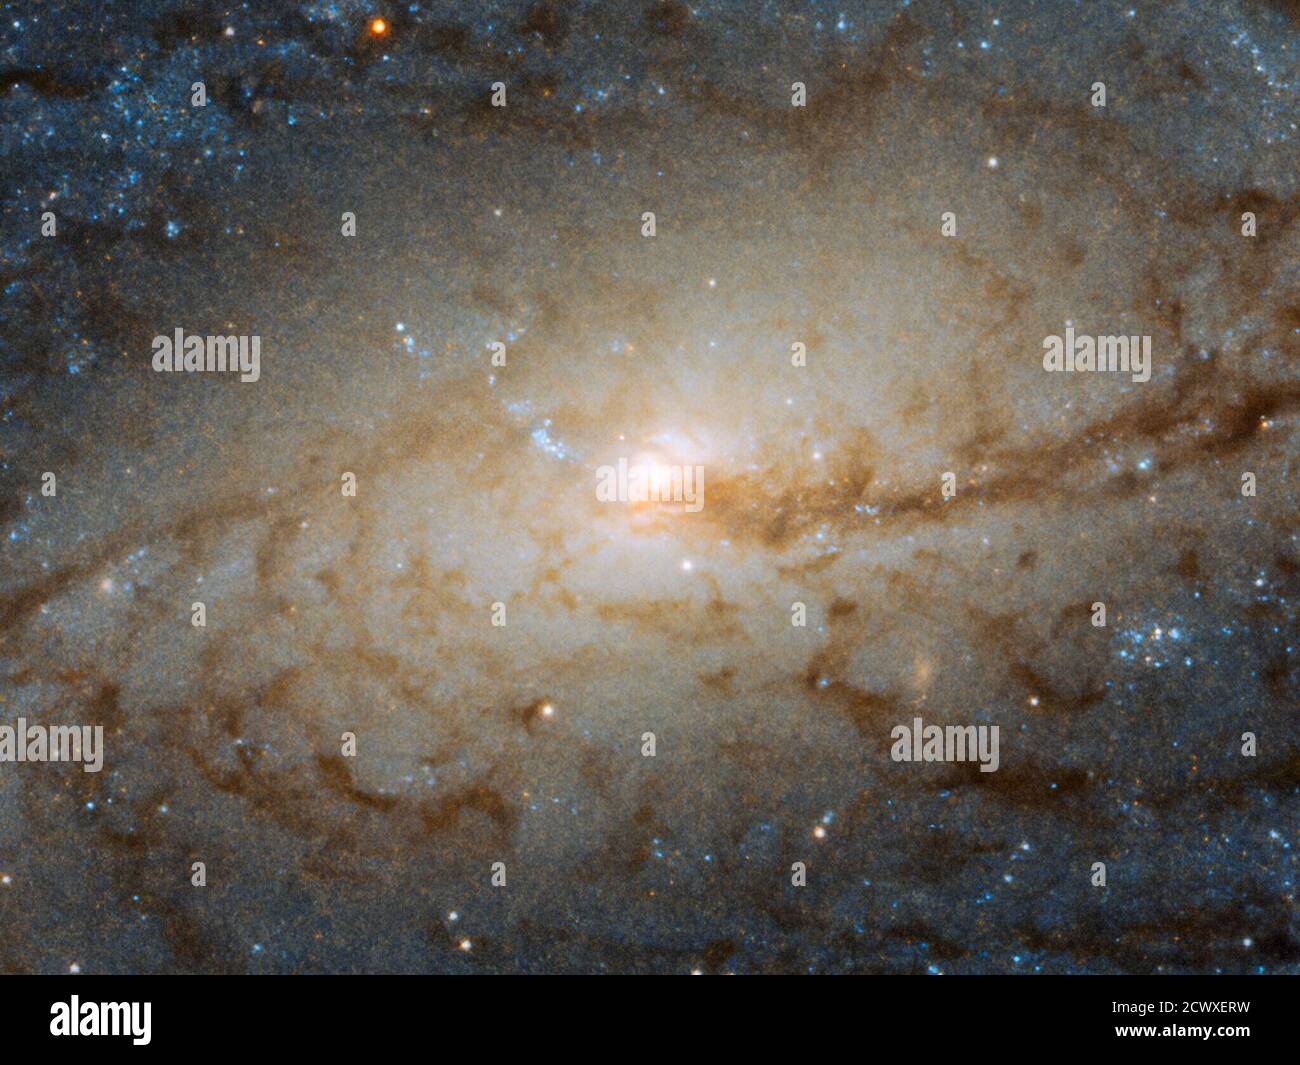 Hubble Spies Galactic Traffic Jam la galaxie spirale barrée NGC 3887, vue ici par la caméra grand champ 3 à bord du télescope spatial Hubble NASA/ESA, se trouve à plus de 60 millions d'années-lumière de nous dans la constellation sud de Crater (la coupe). Il a été découvert le 31 décembre 1785 par l'astronome William Herschel. Son orientation vers nous, bien que pas exactement face à face, nous permet de voir en détail les bras en spirale et le renflement central du NGC 3887, ce qui en fait une cible idéale pour étudier les bras tortueux d'une galaxie spirale et les étoiles qui y sont situées. L'existence même des bras en spirale a été pendant longtemps un Banque D'Images